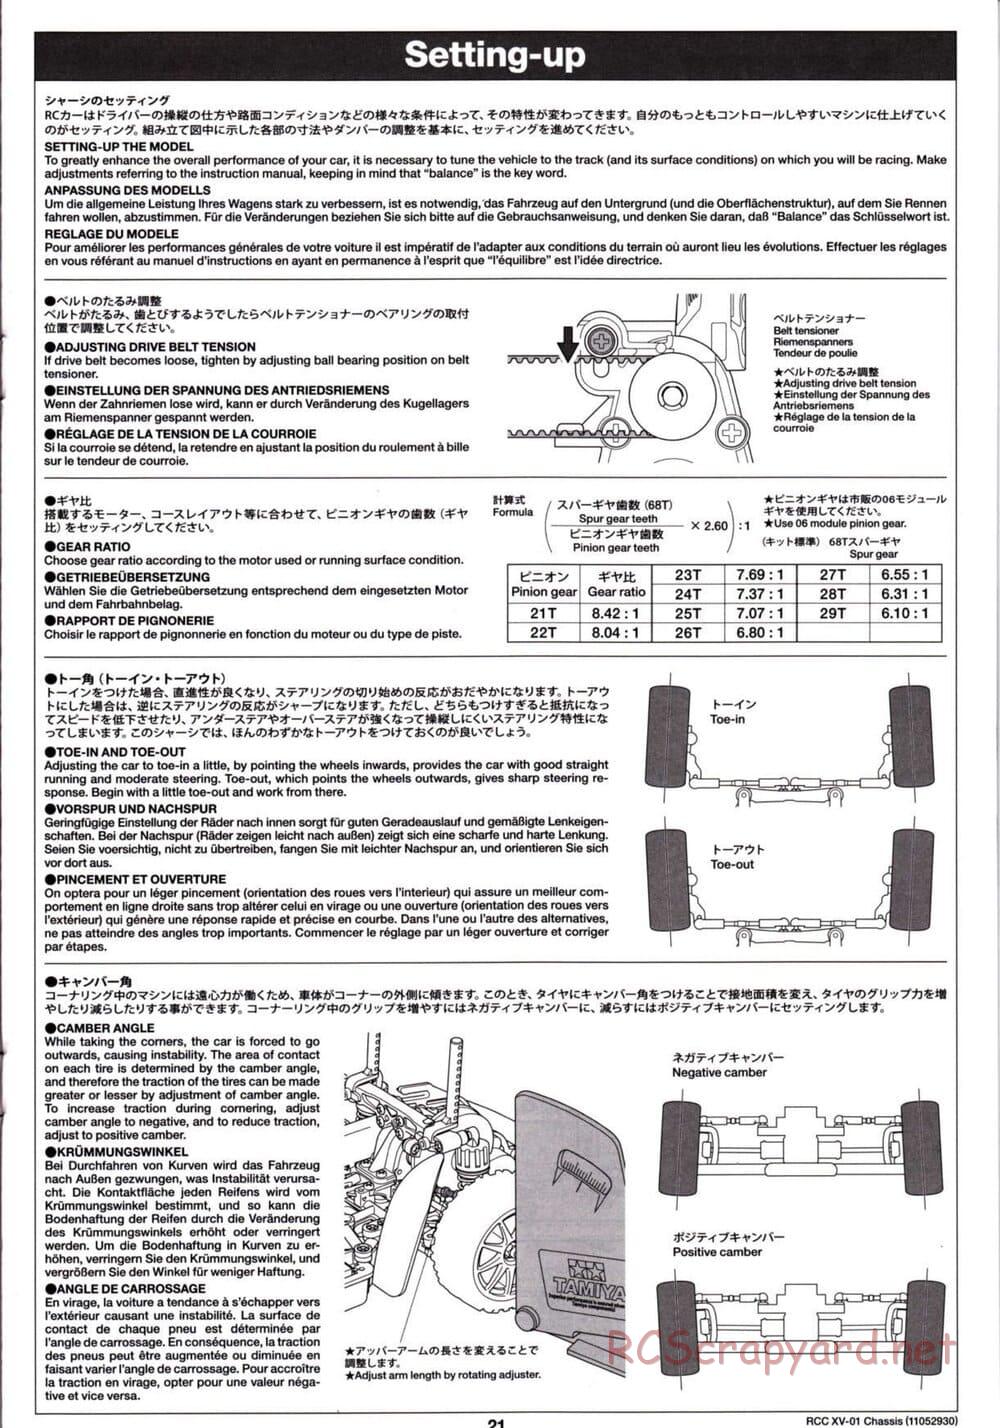 Tamiya - XV-01 Chassis - Manual - Page 22